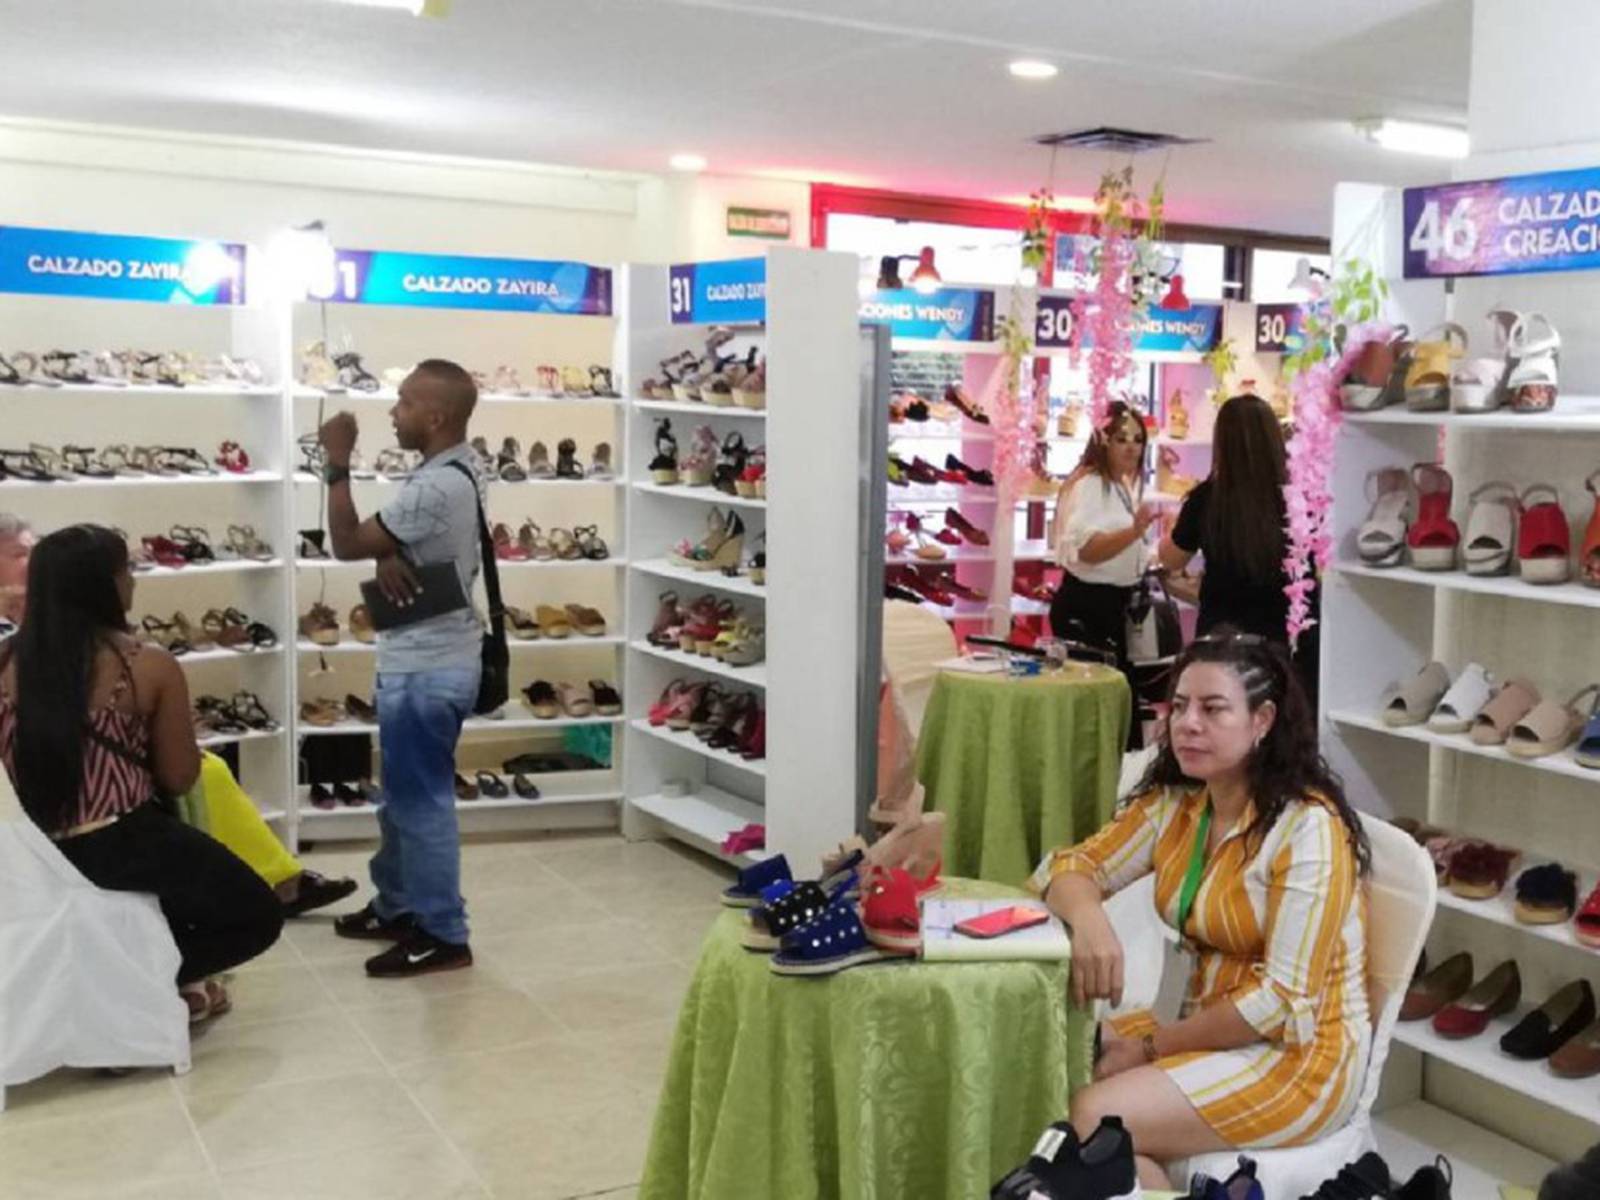 Fabricantes de calzado en Cúcuta aún no logran reactivación económica Fabricantes de calzado en Cúcuta aún no logran reactivación económica Fabricantes de calzado en Cúcuta aún no logran reactivación económica